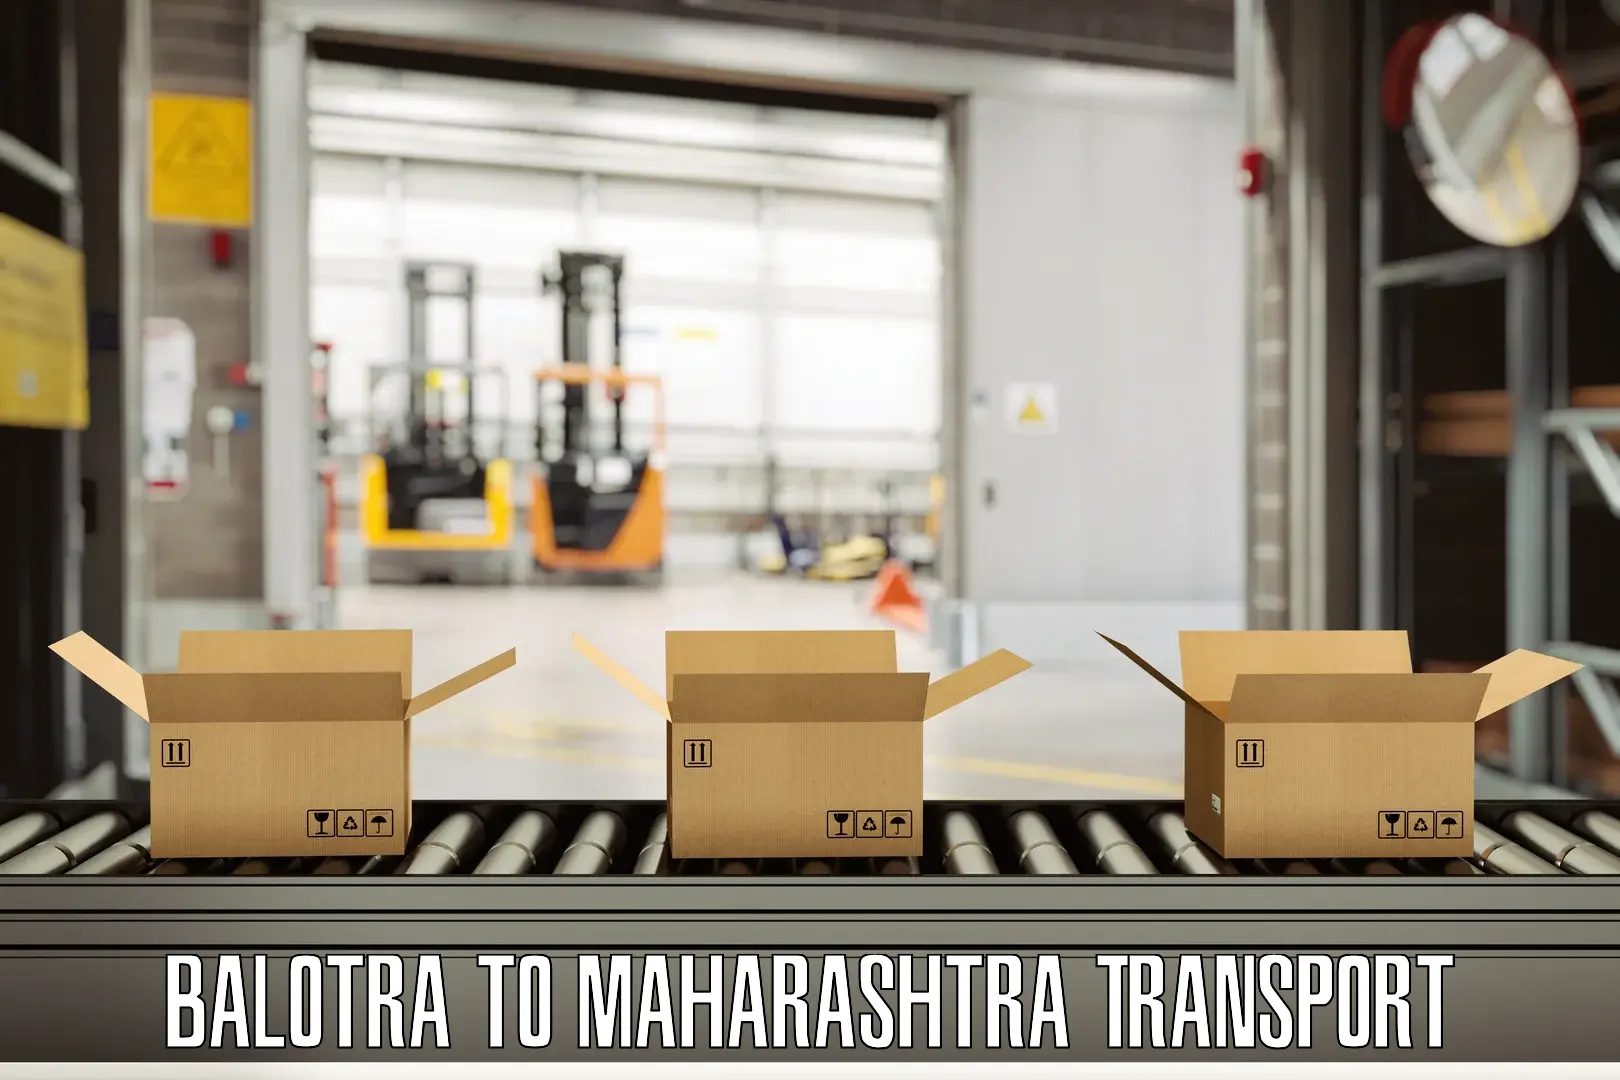 All India transport service Balotra to Maharashtra